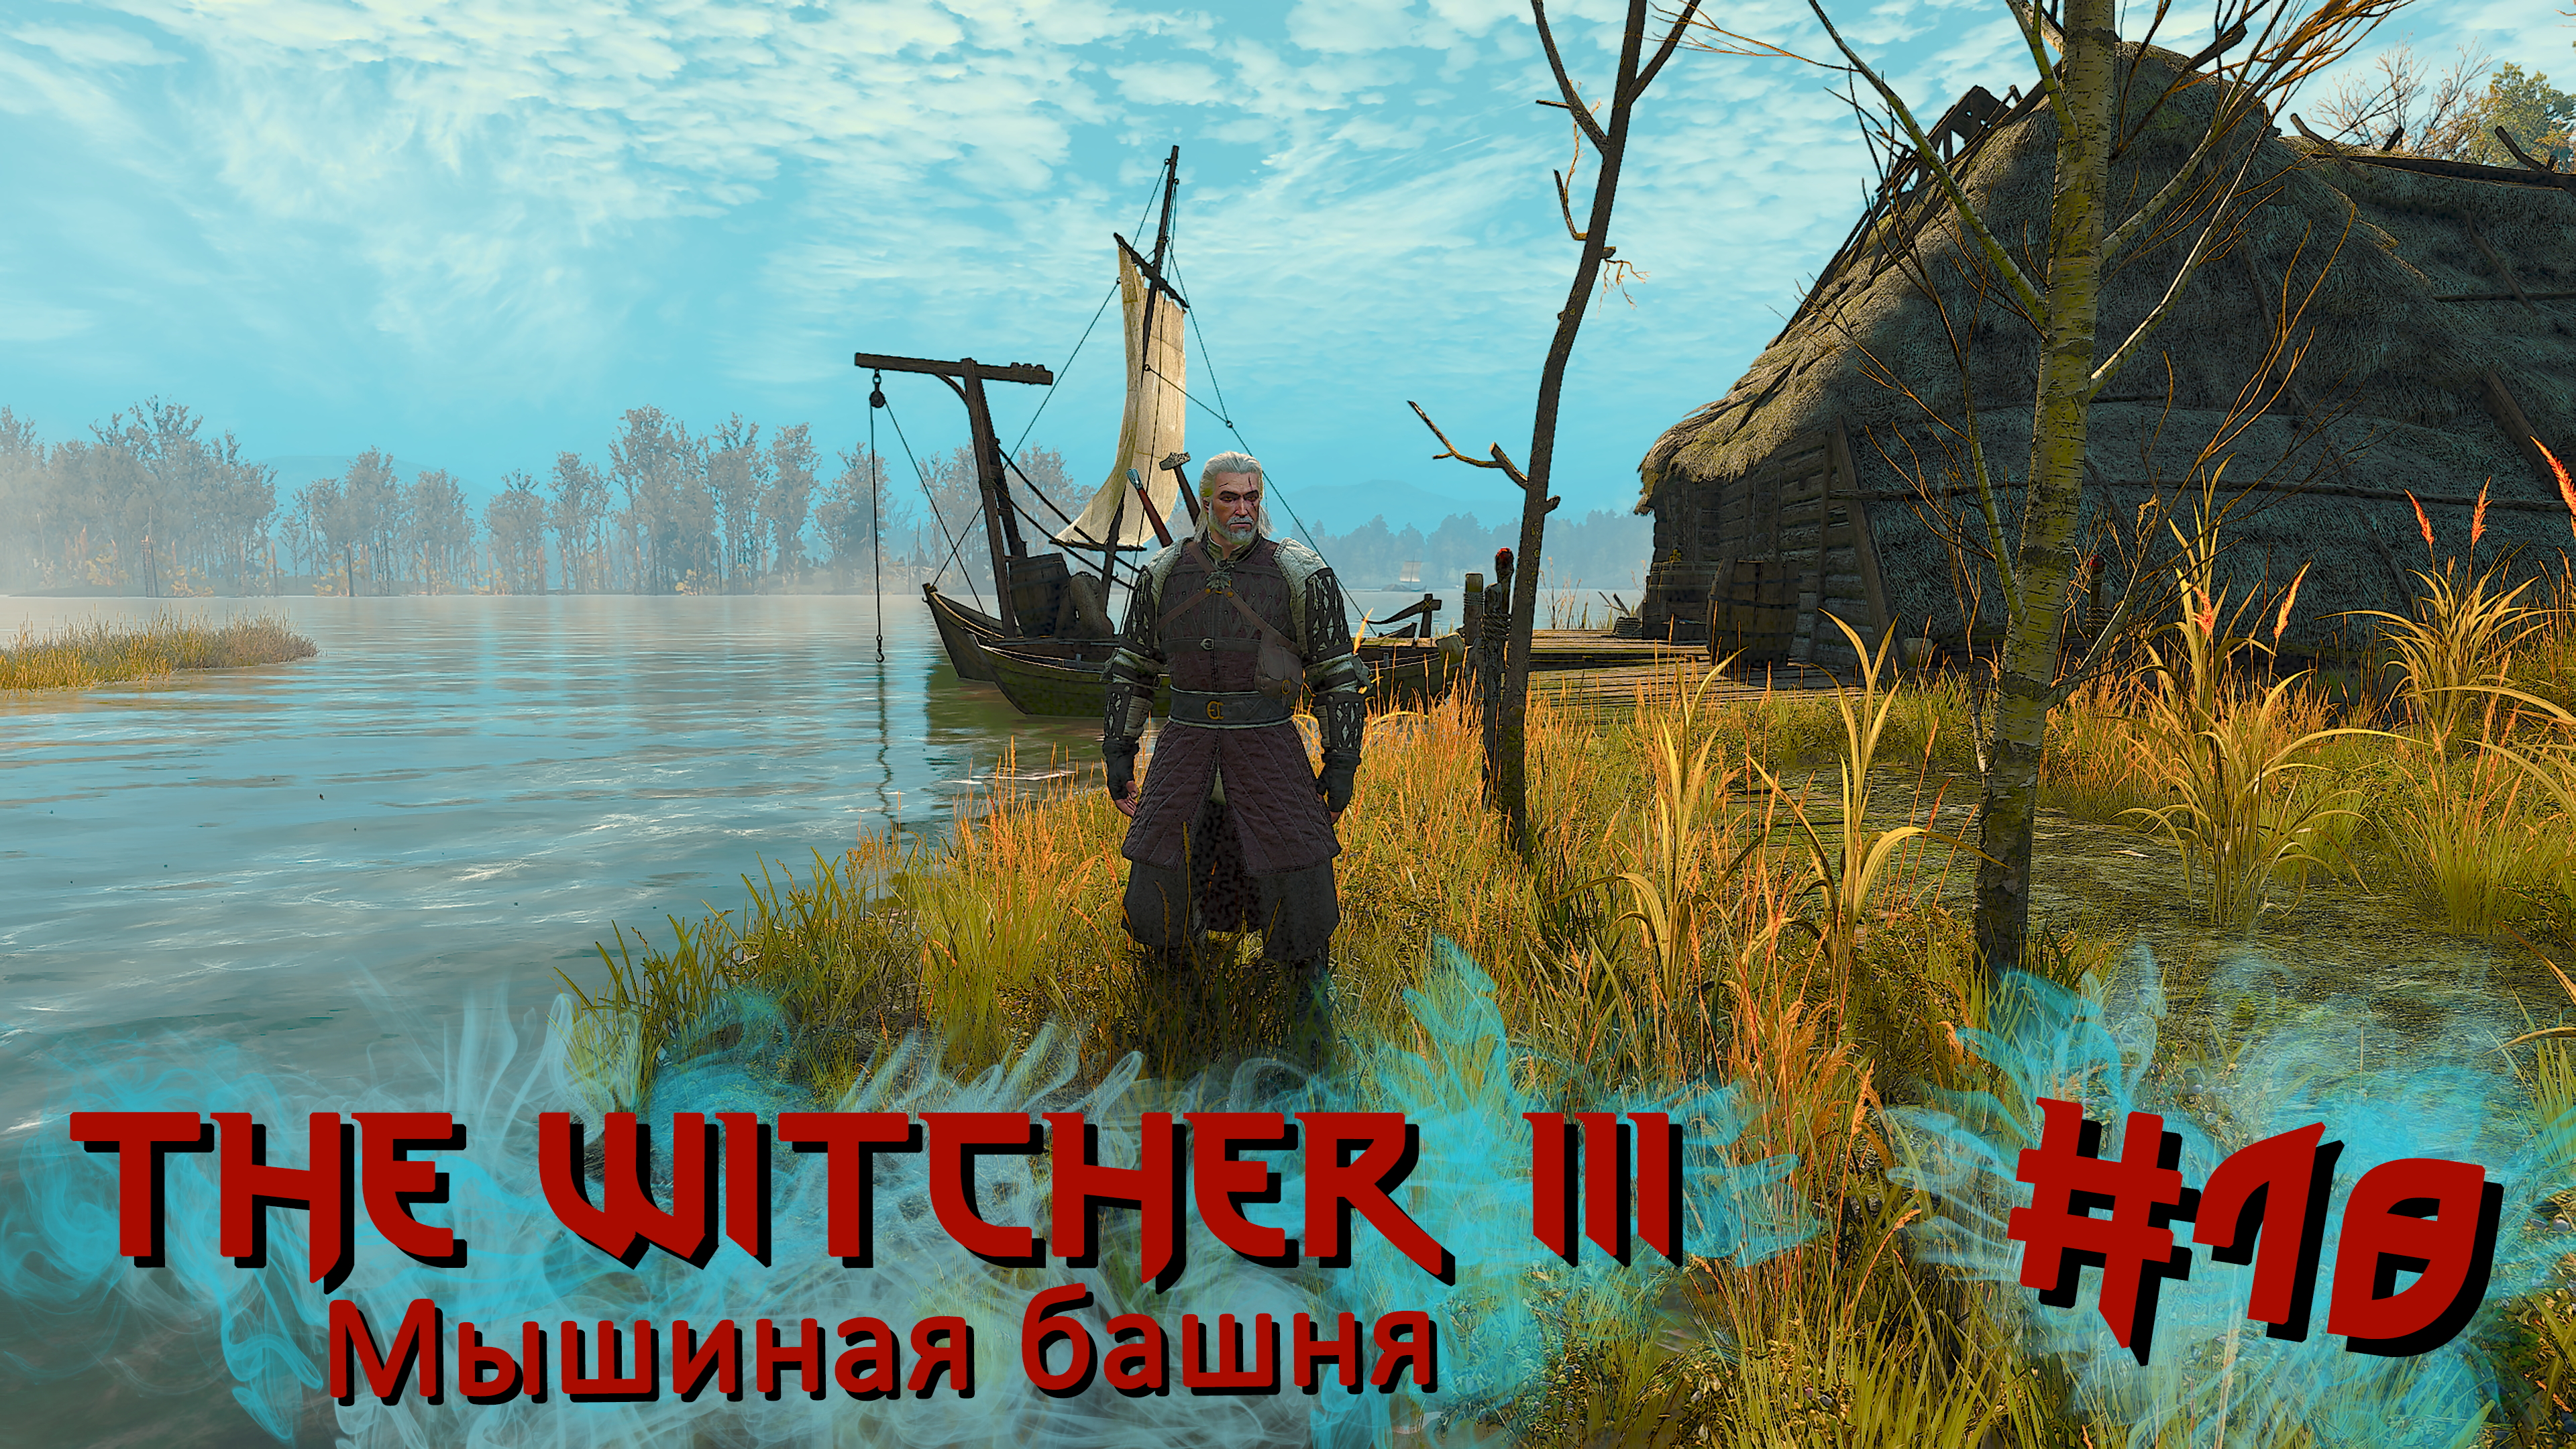 Мышиная башня | The Witcher 3 / Ведьмак 3 #018 [Прохождение] | Play GH